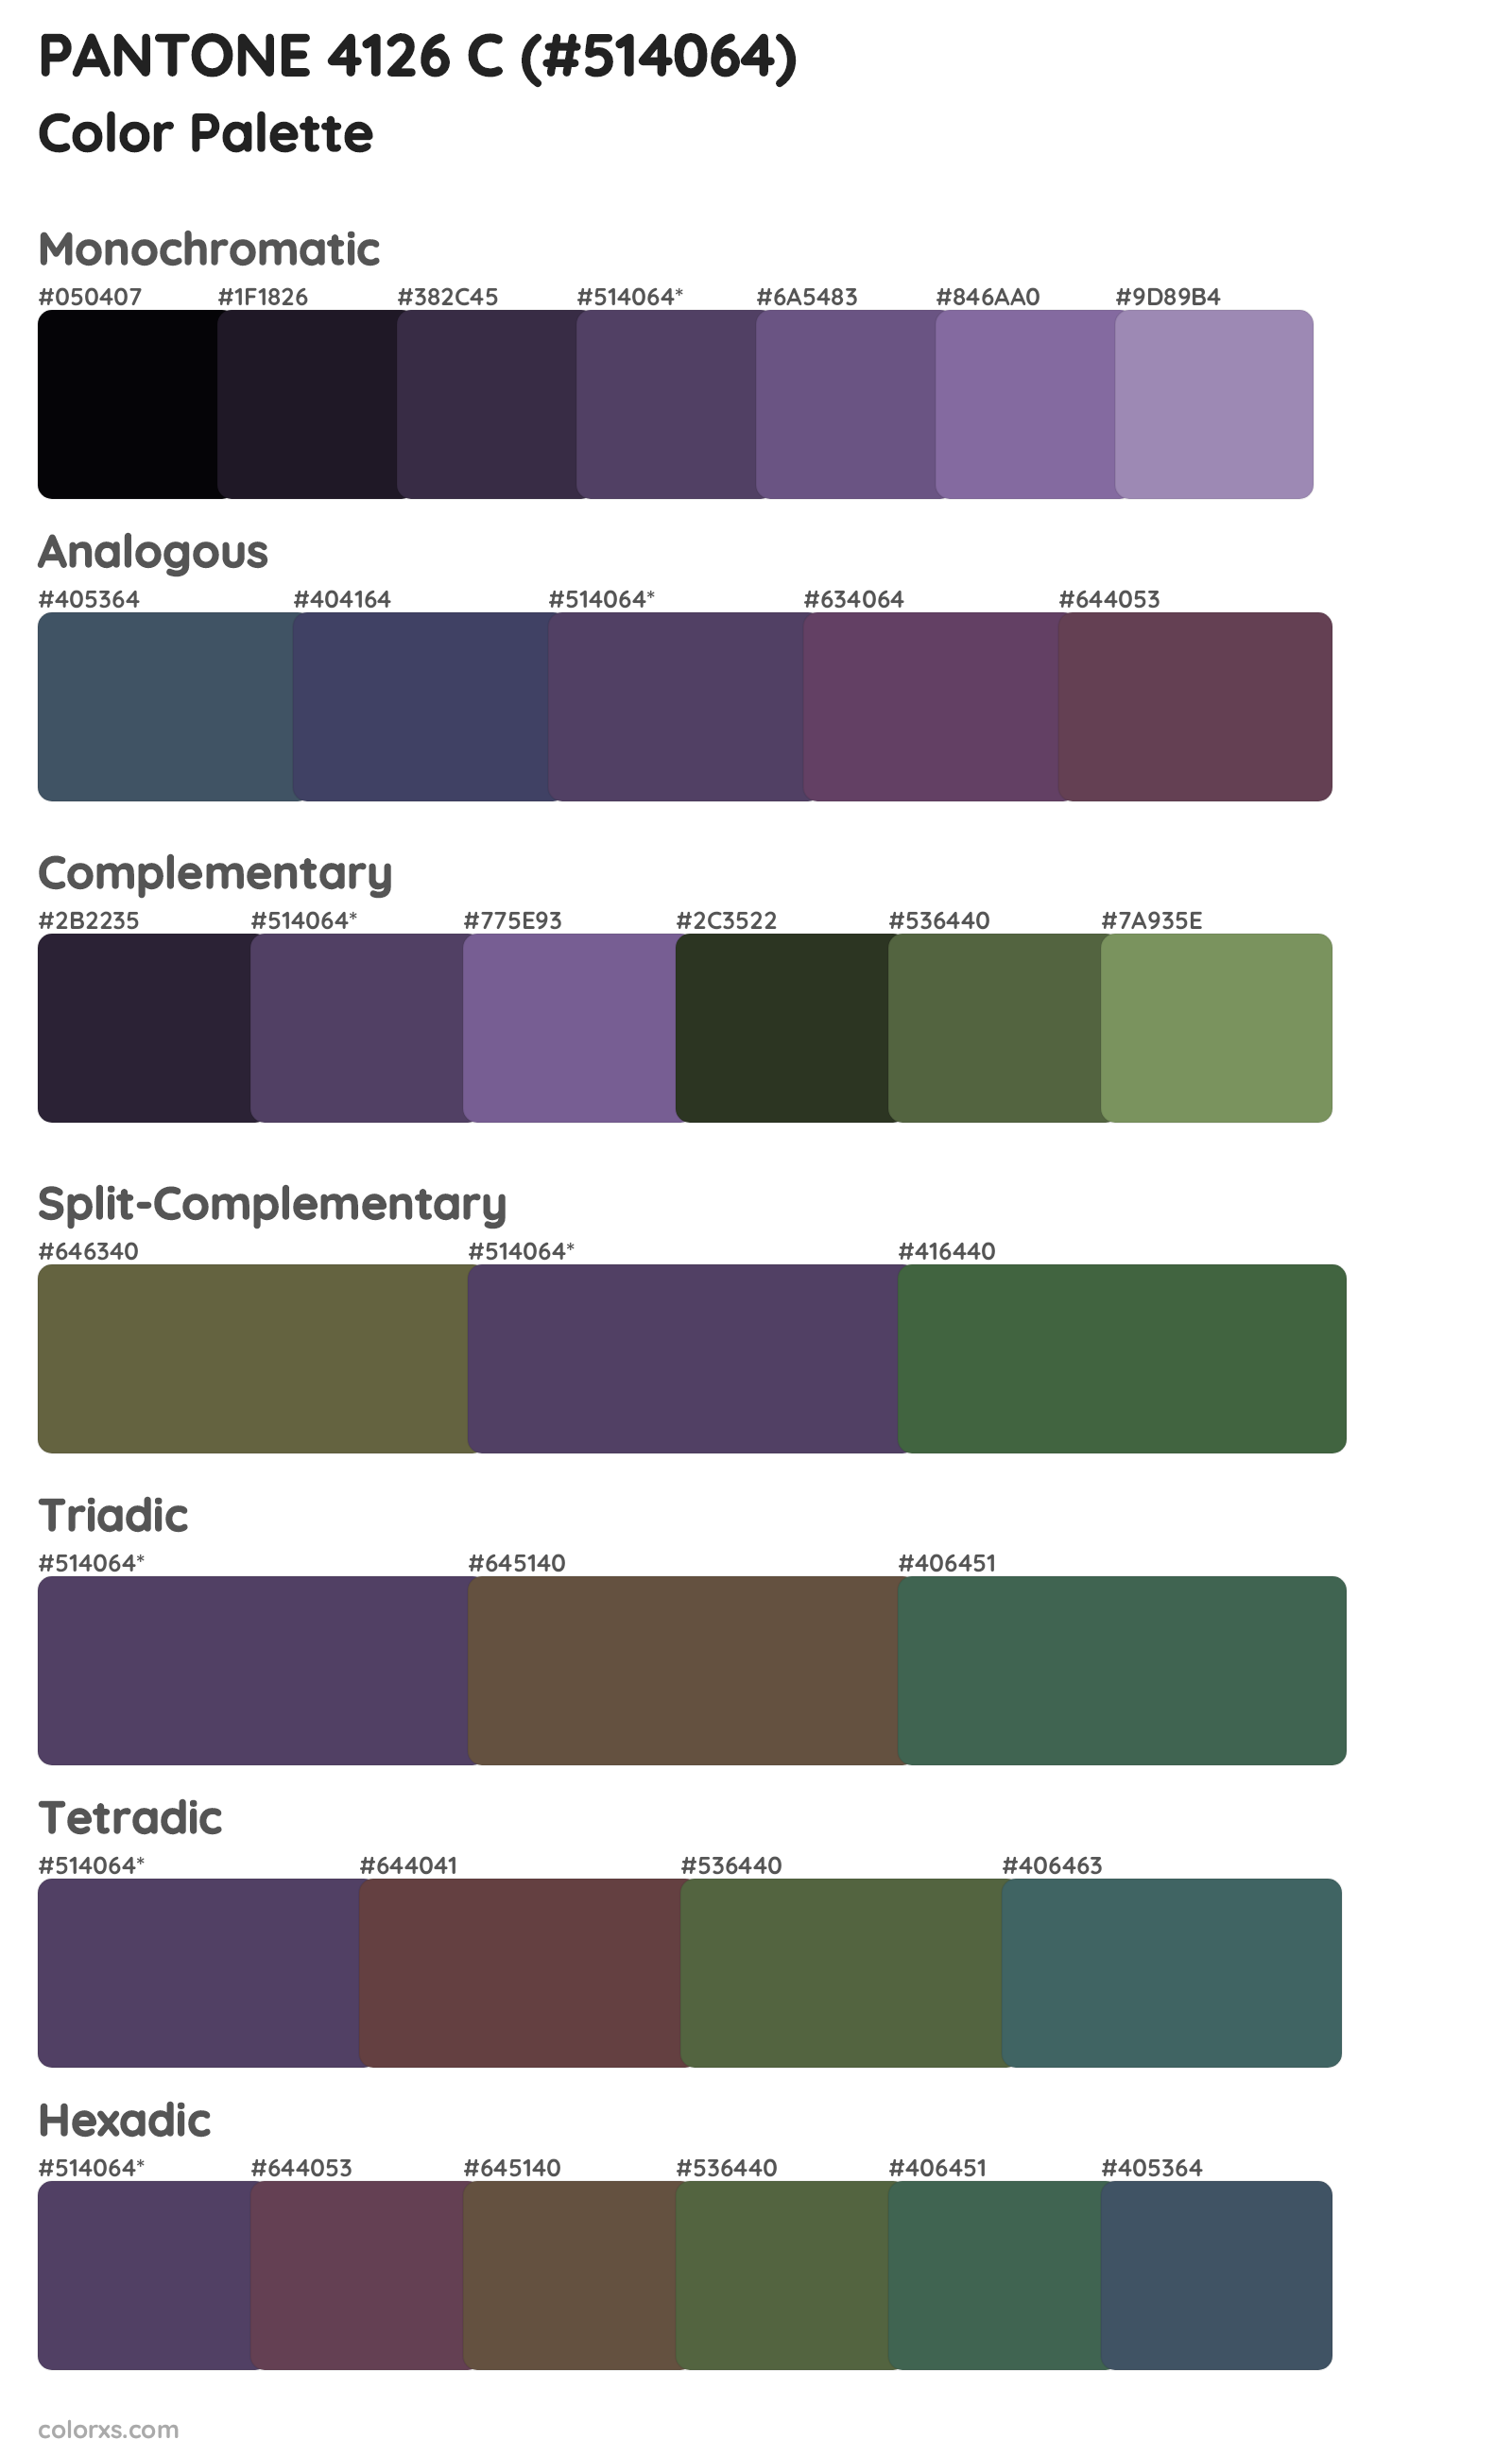 PANTONE 4126 C Color Scheme Palettes